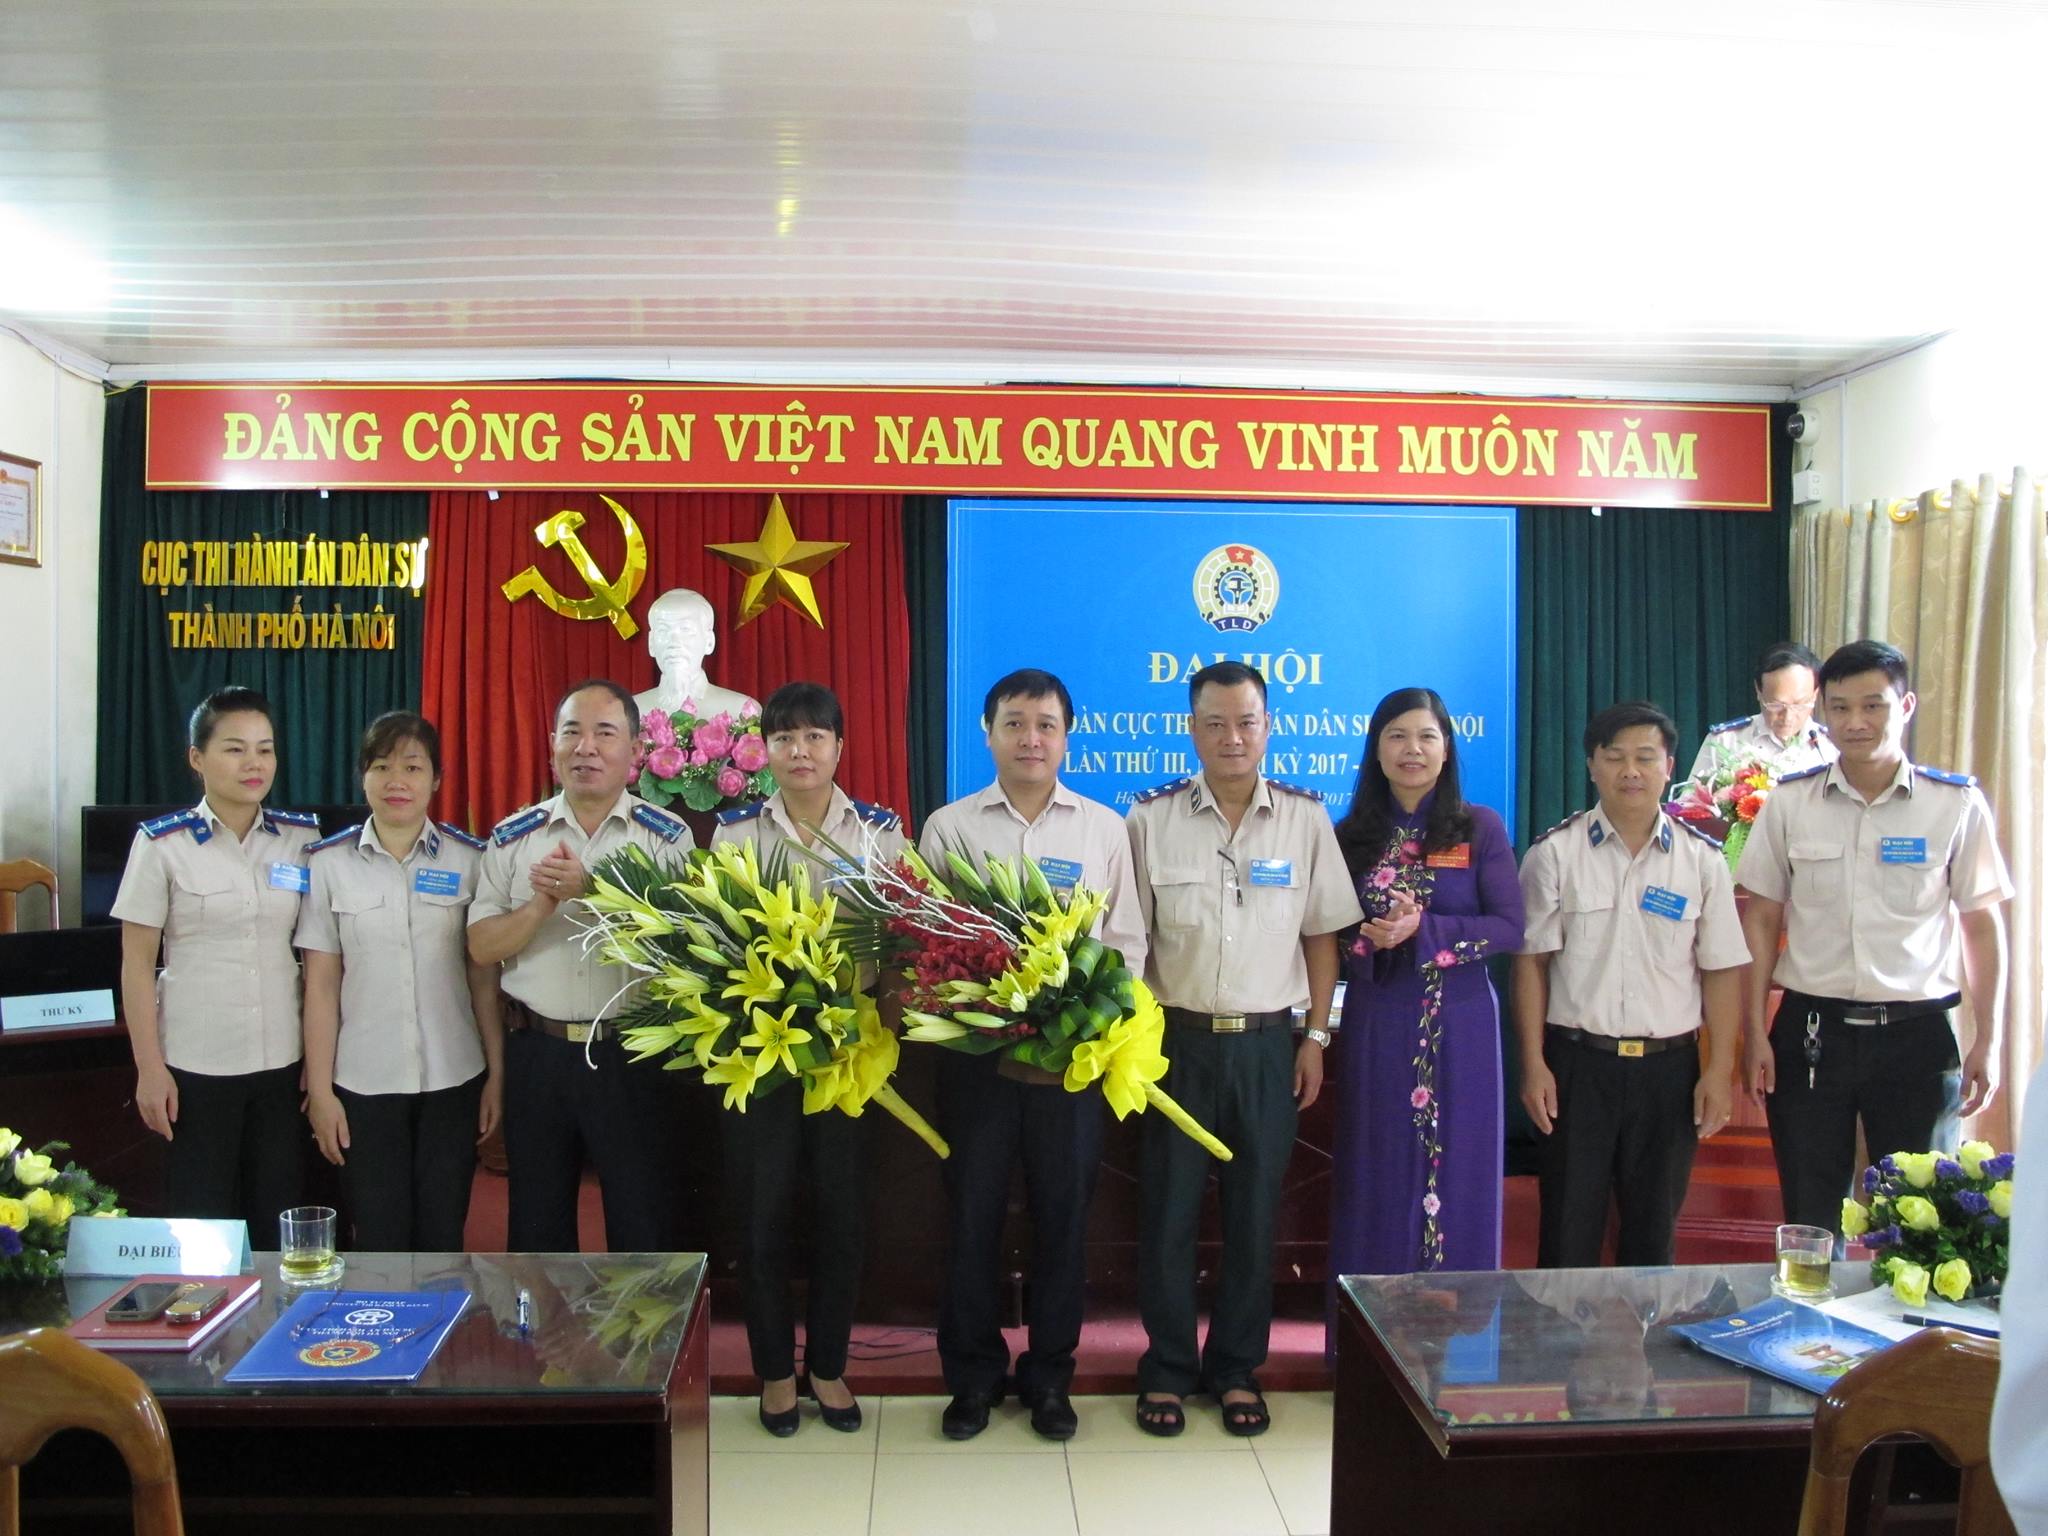 Đại hội Công đoàn Cục Thi hành án dân sự thành phố Hà Nội lần thứ III nhiệm kỳ 2017 - 2022